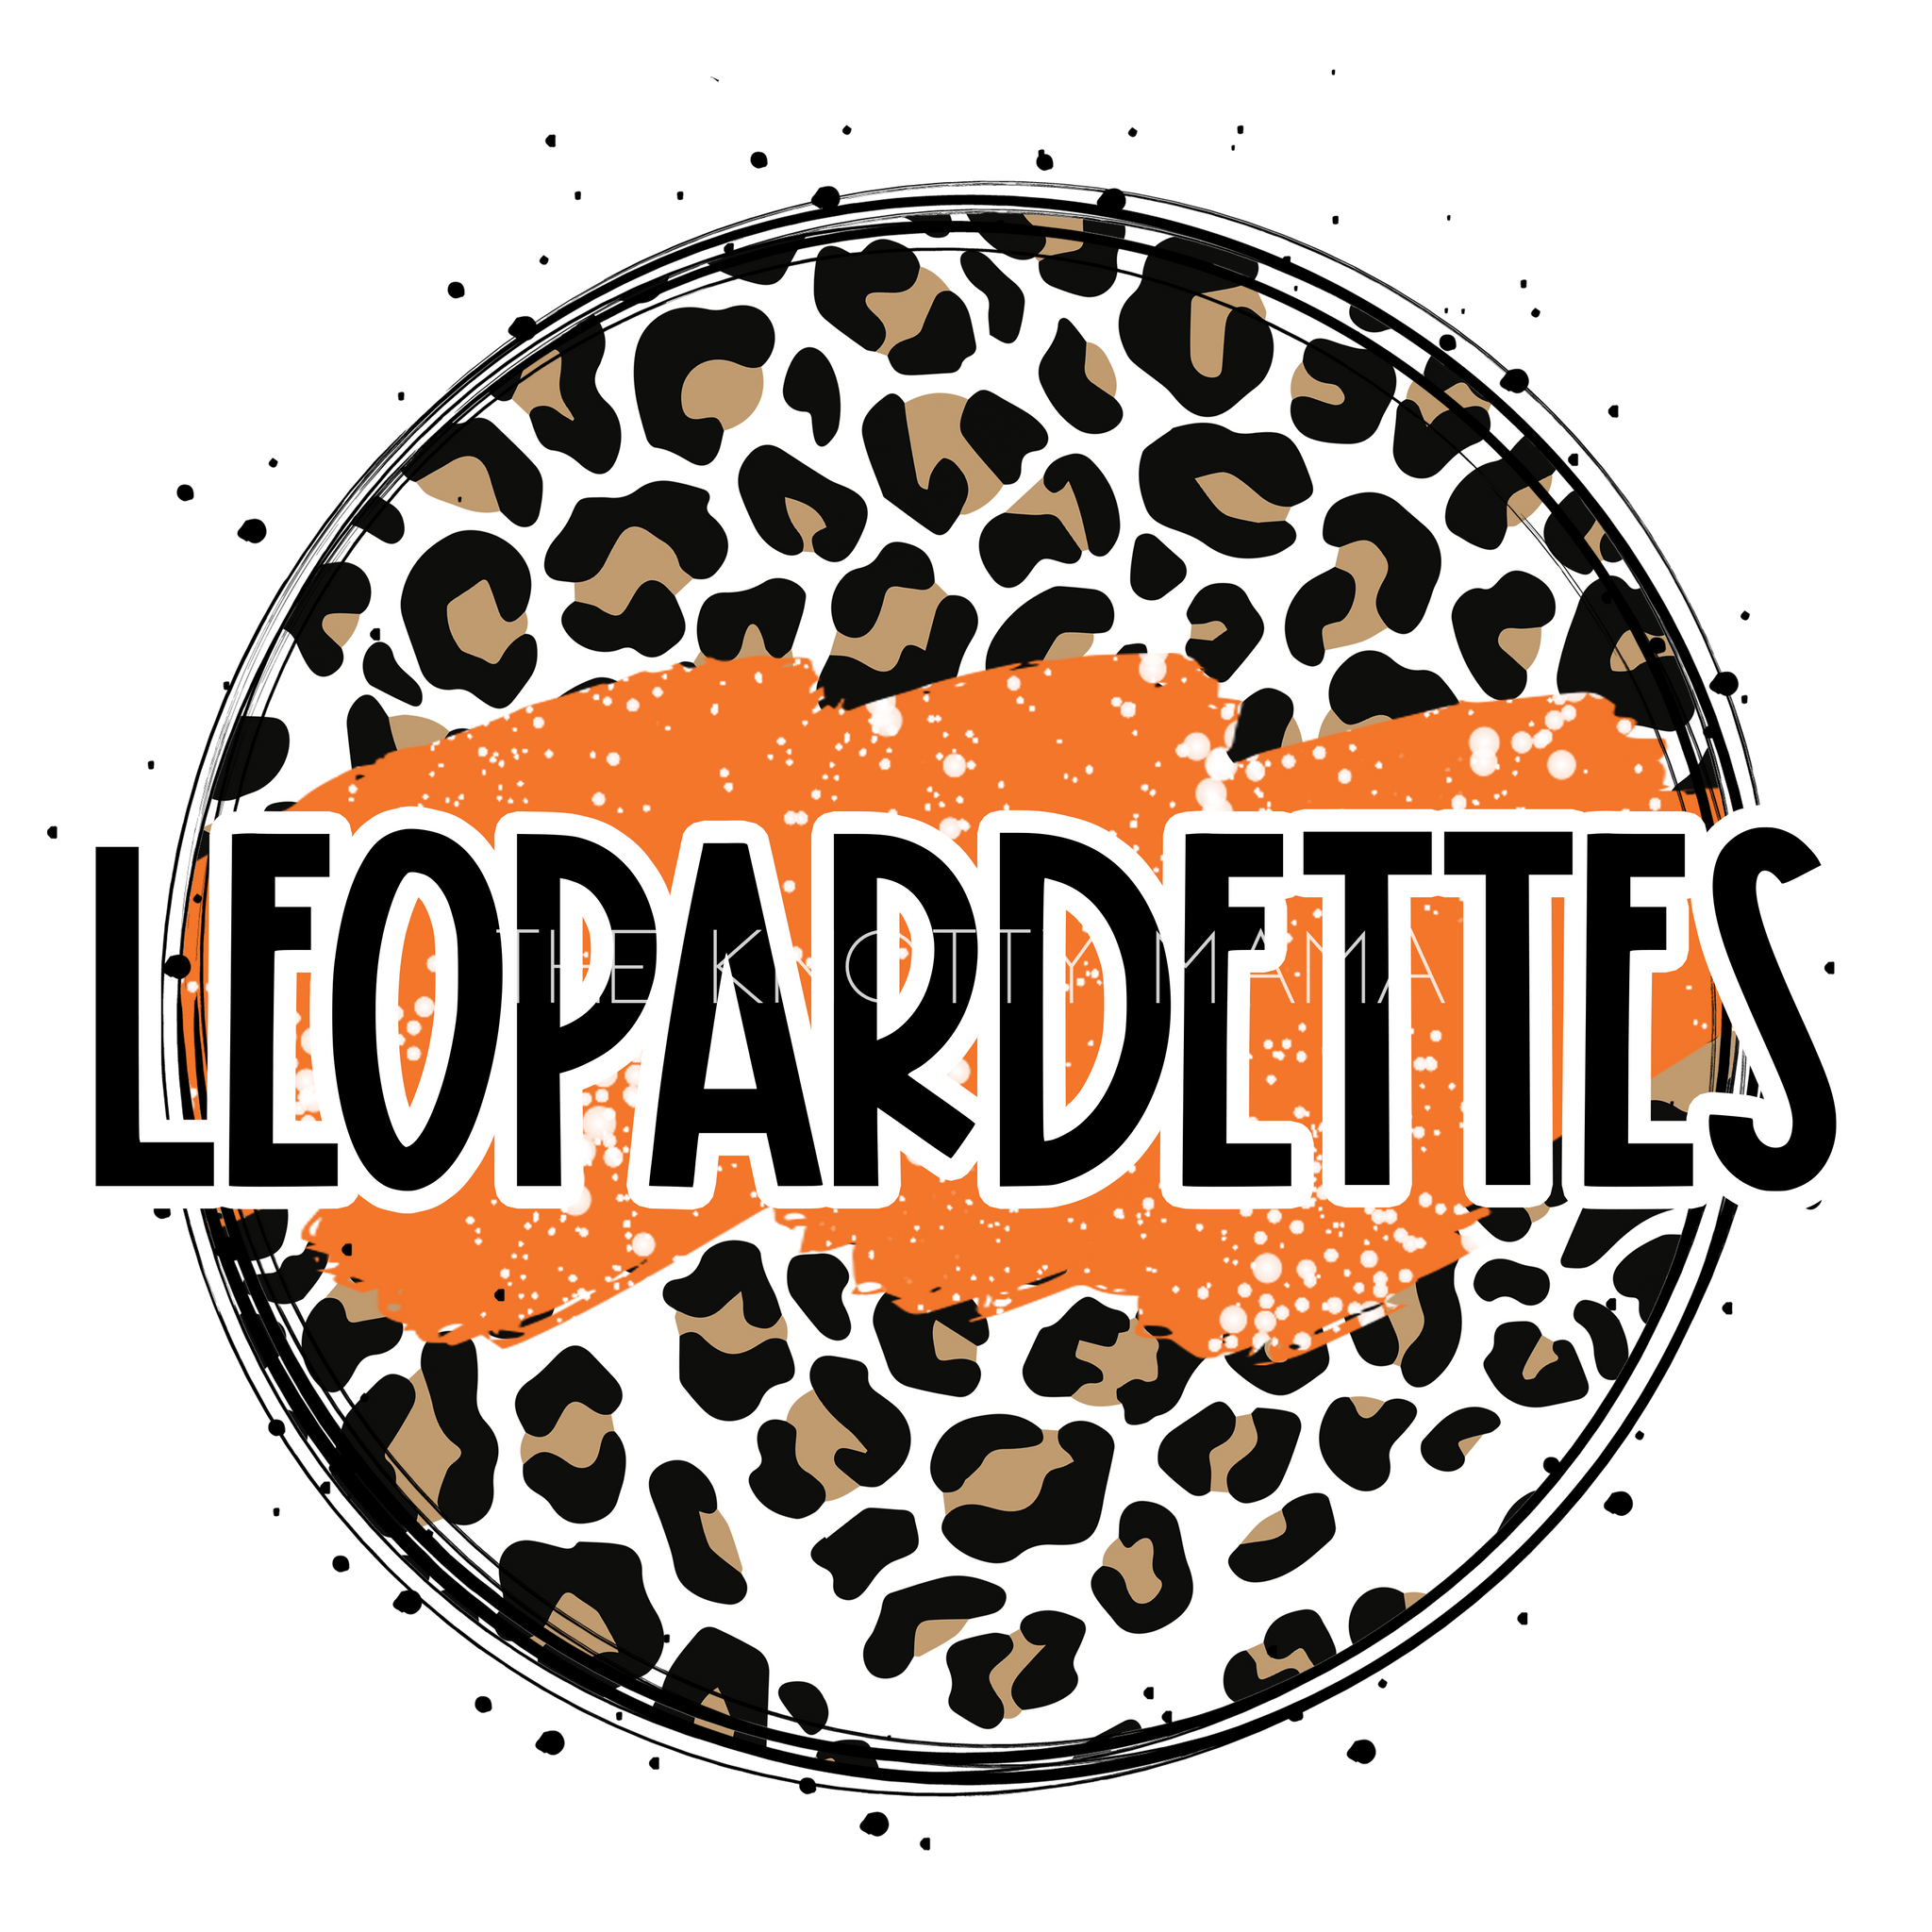 Orange Leopardettes - Leopard Circle PNG